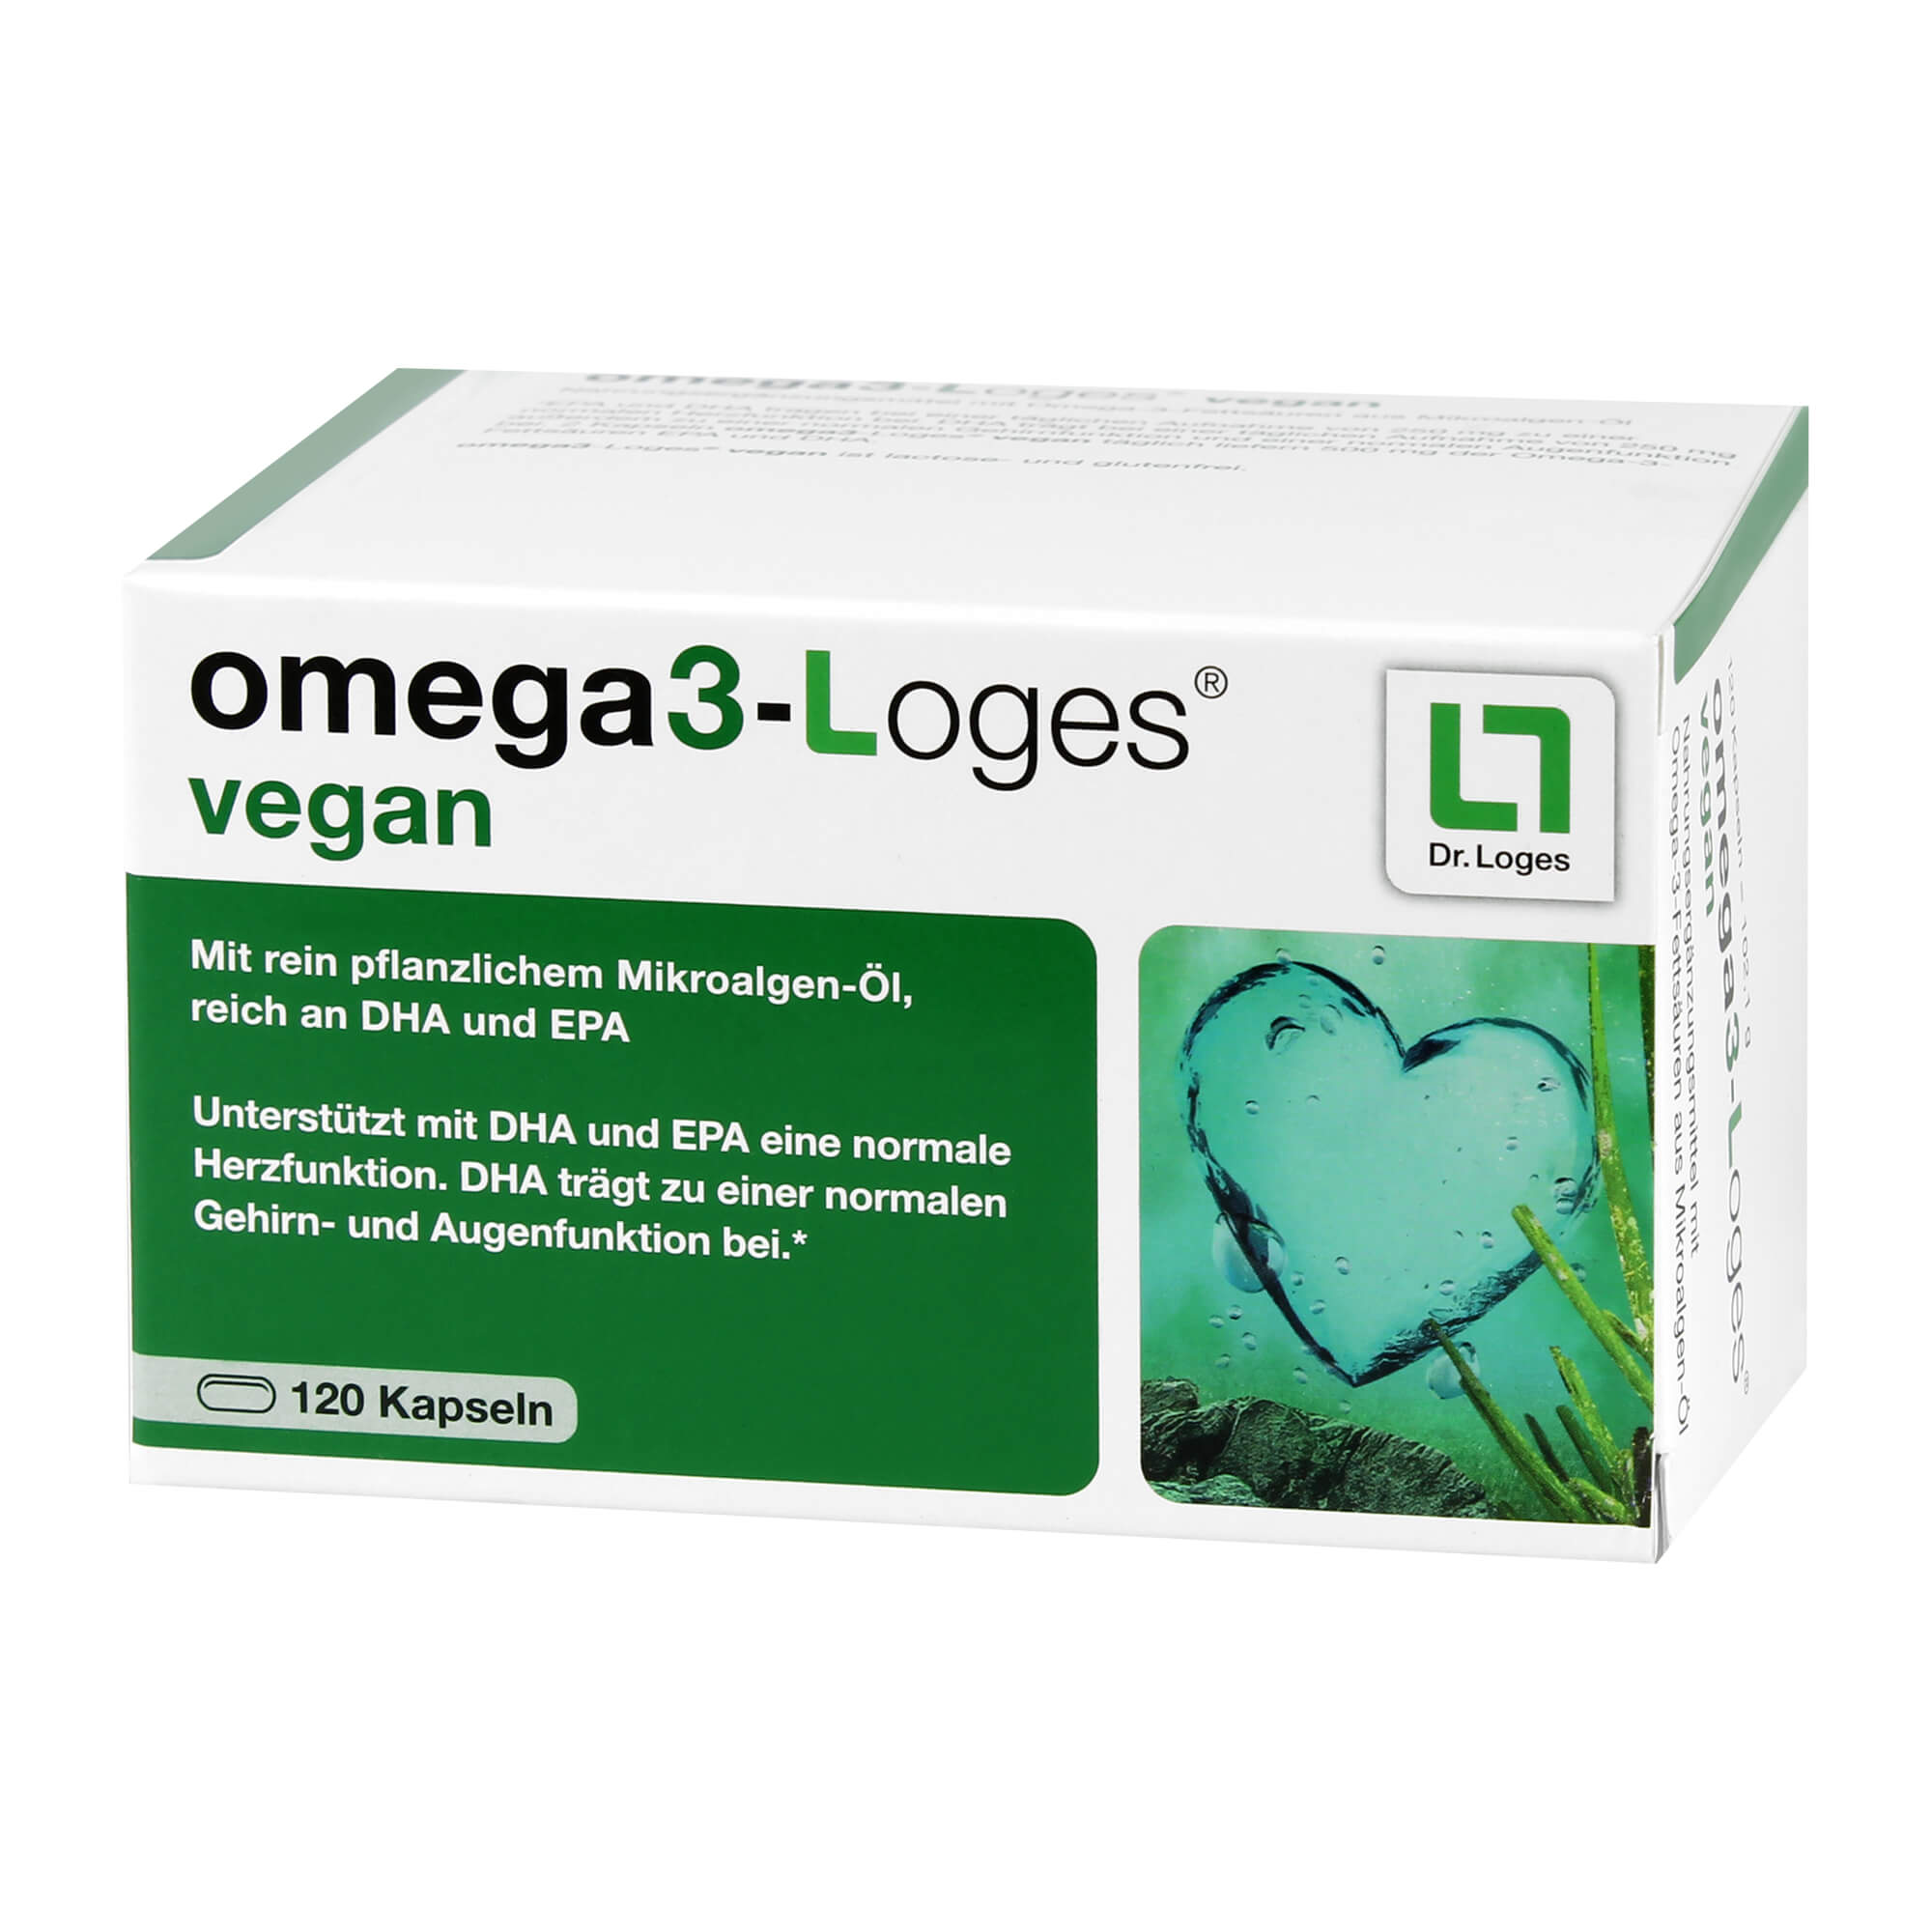 Pflanzliches Nahrungsergänzungsmittel mit Omega-3-Fettsäuren aus Mikroalgen-Öl.